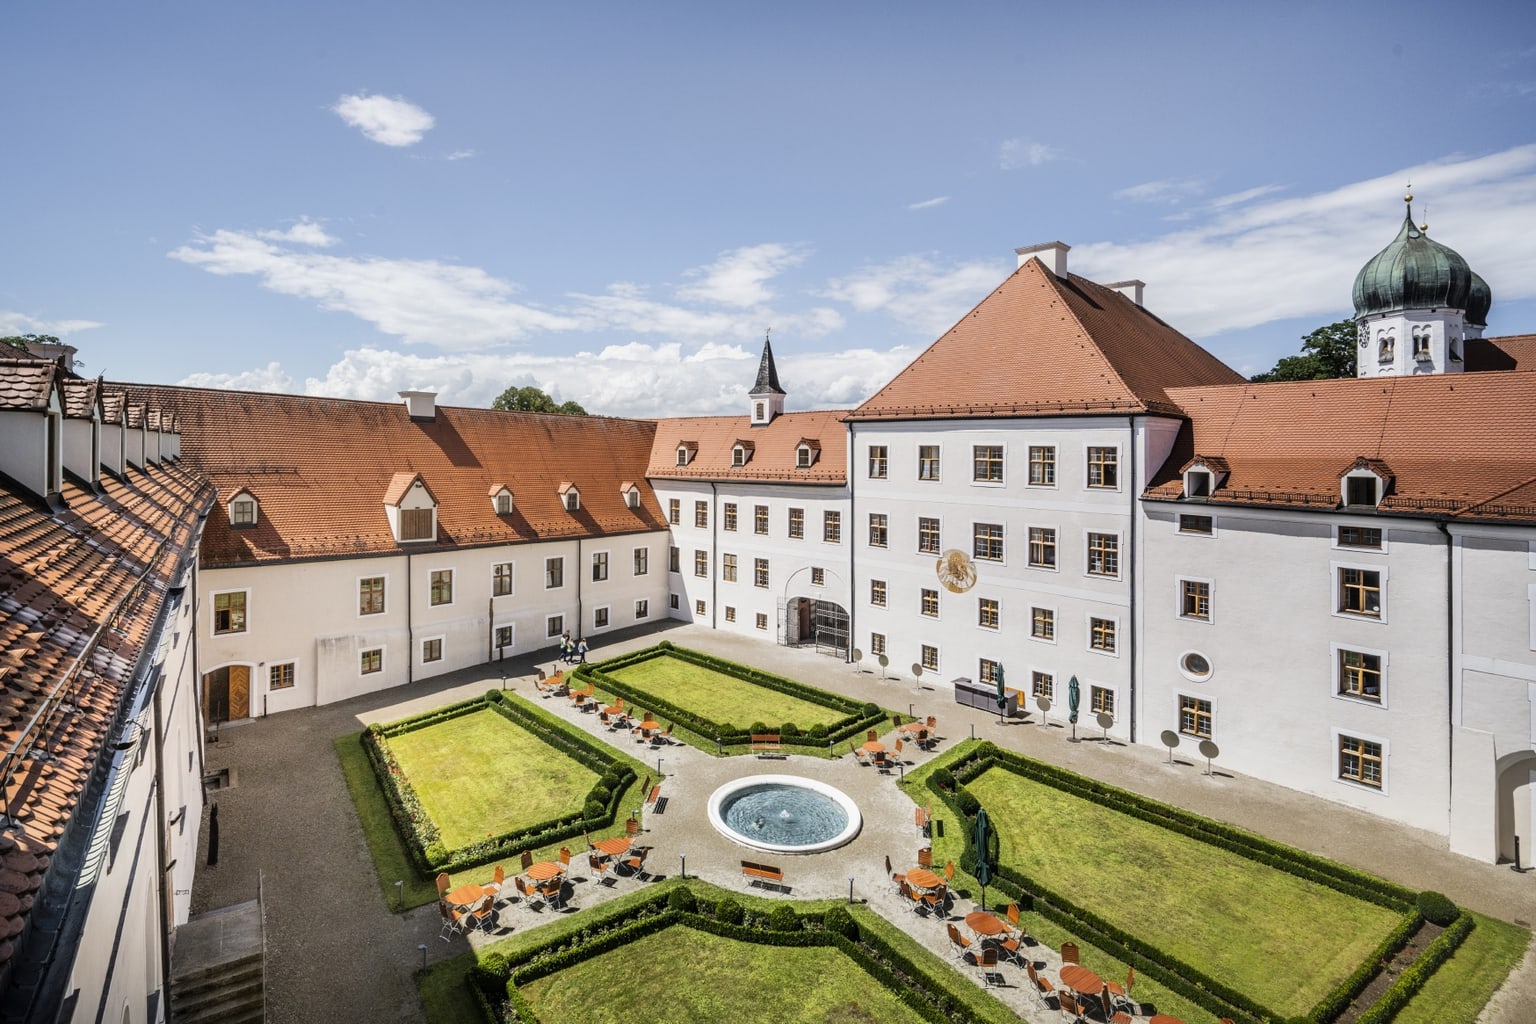 De tuin van hotel Klooster Seeon in Beieren